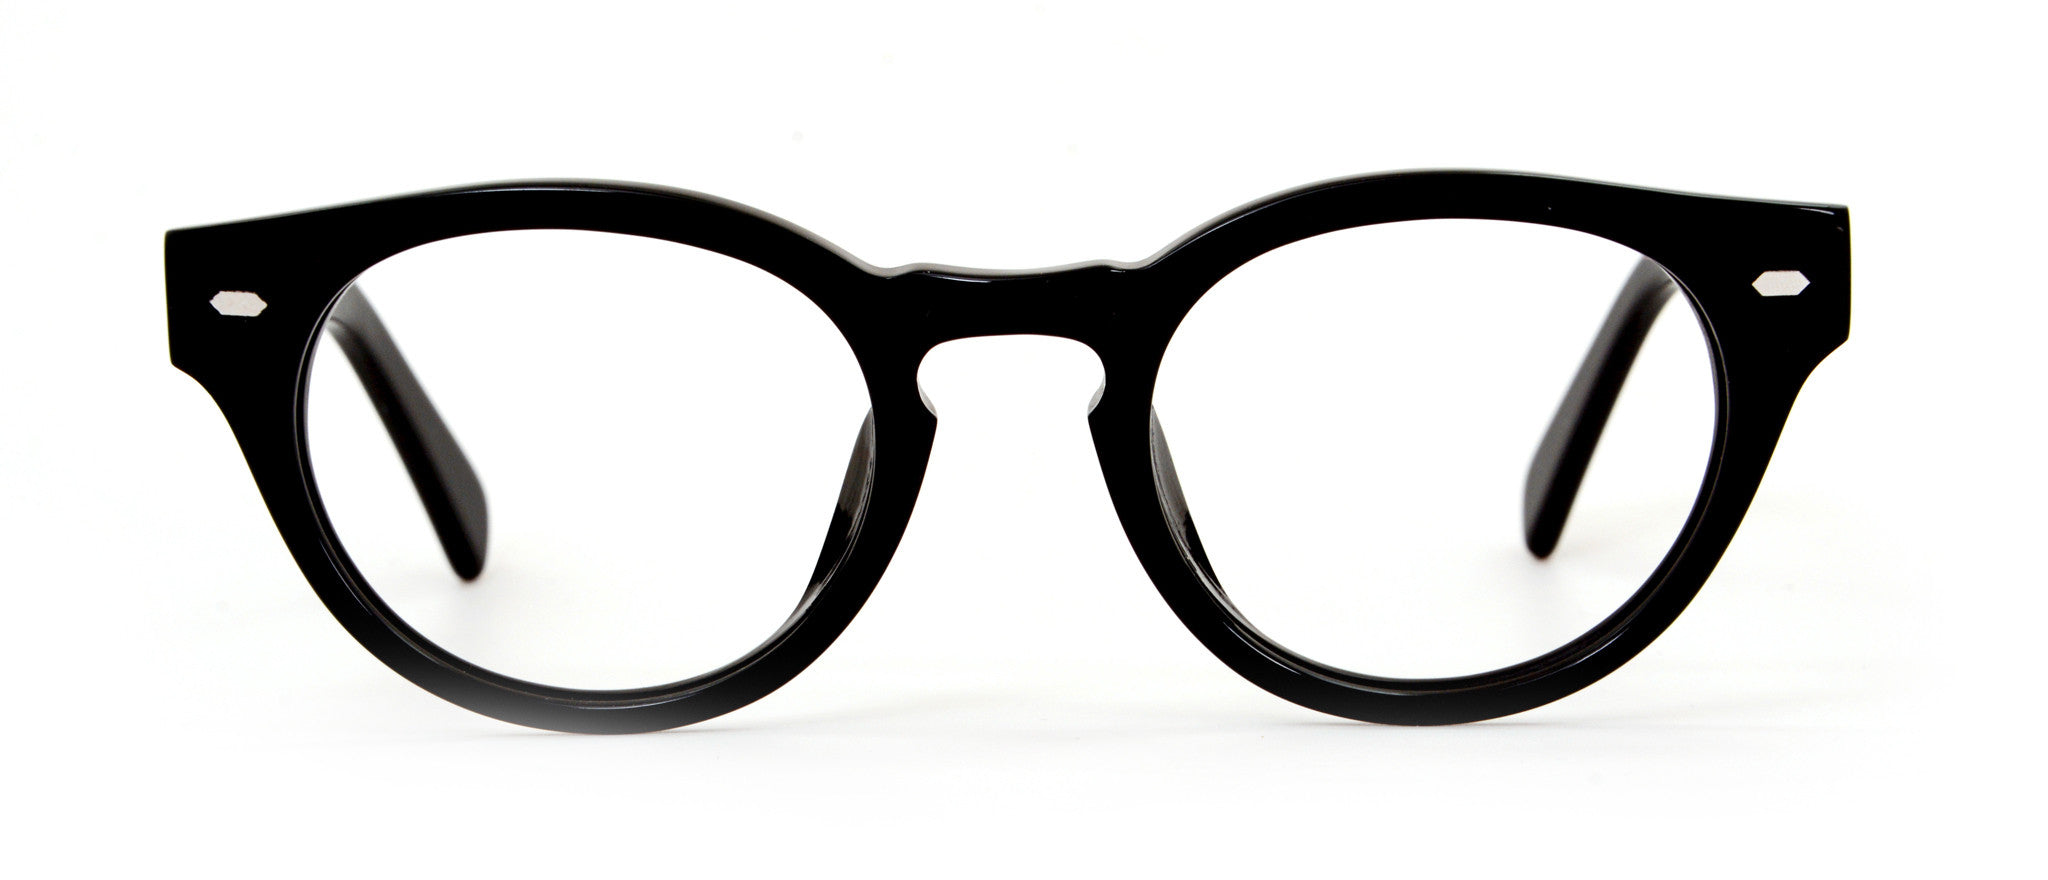 JAN Black Glasses | Online Eyeglasses & Sunglasses